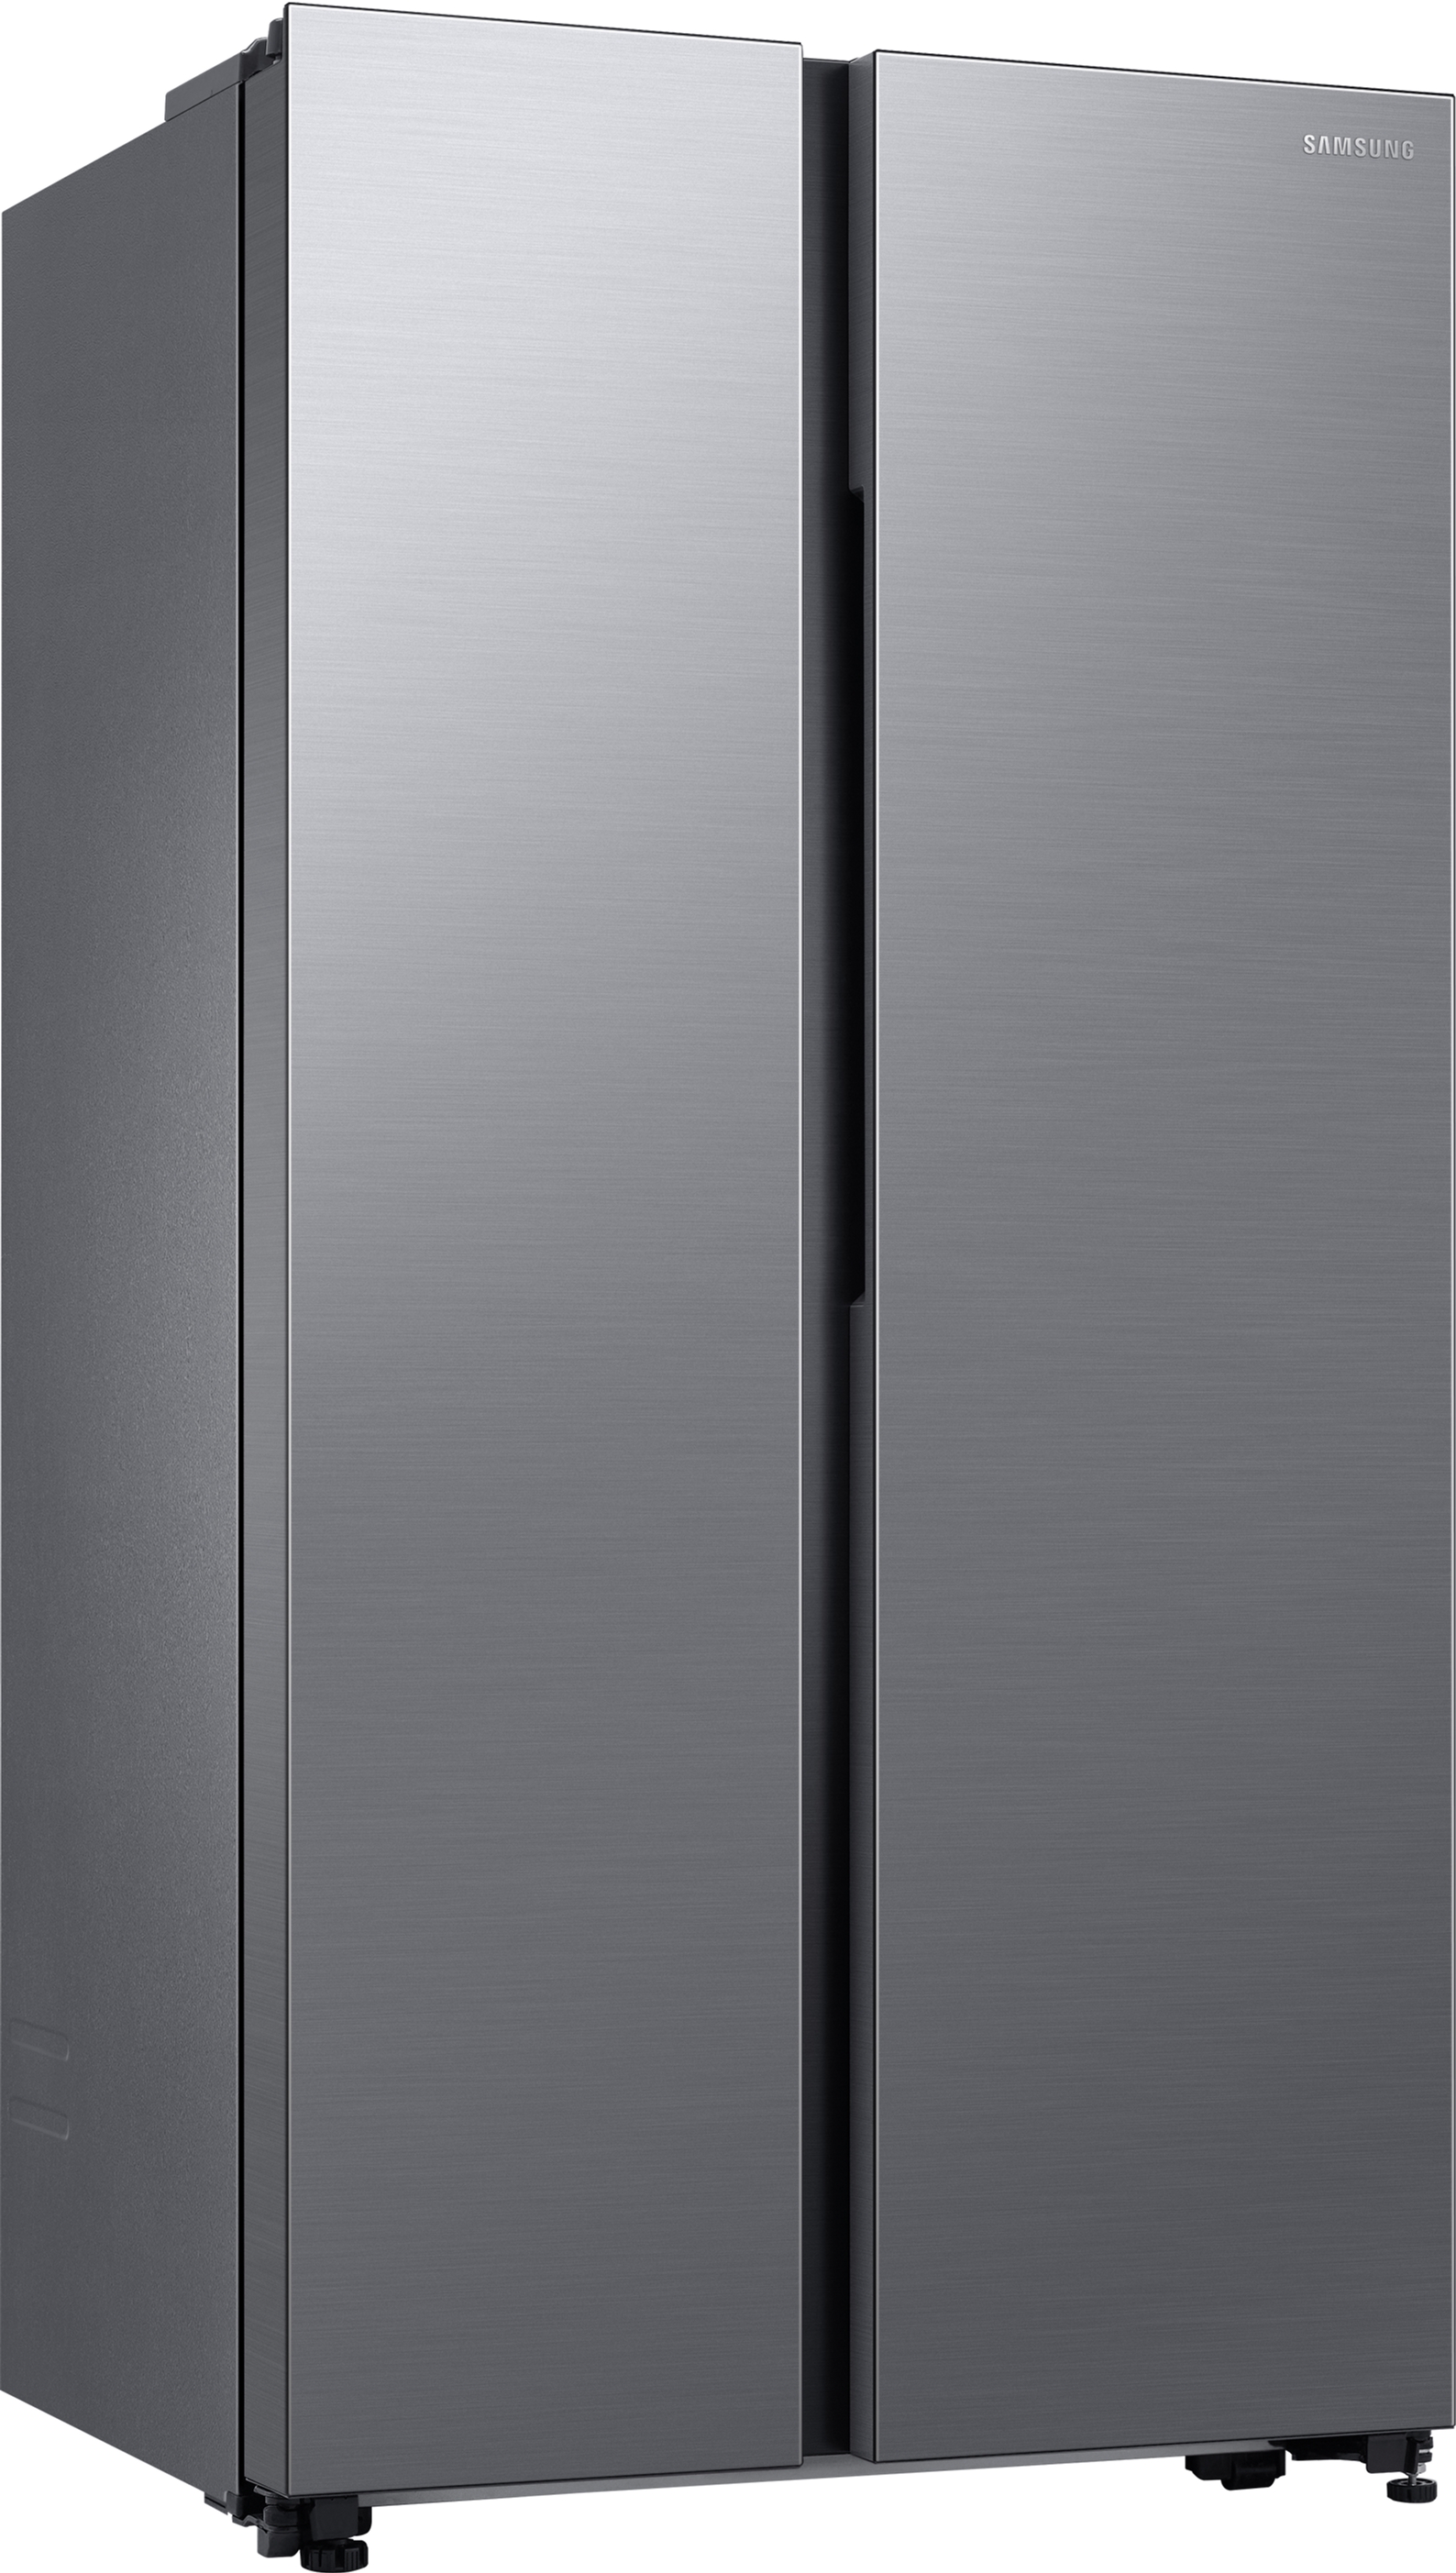 Холодильник Samsung RS62DG5003S9UA цена 53999.00 грн - фотография 2